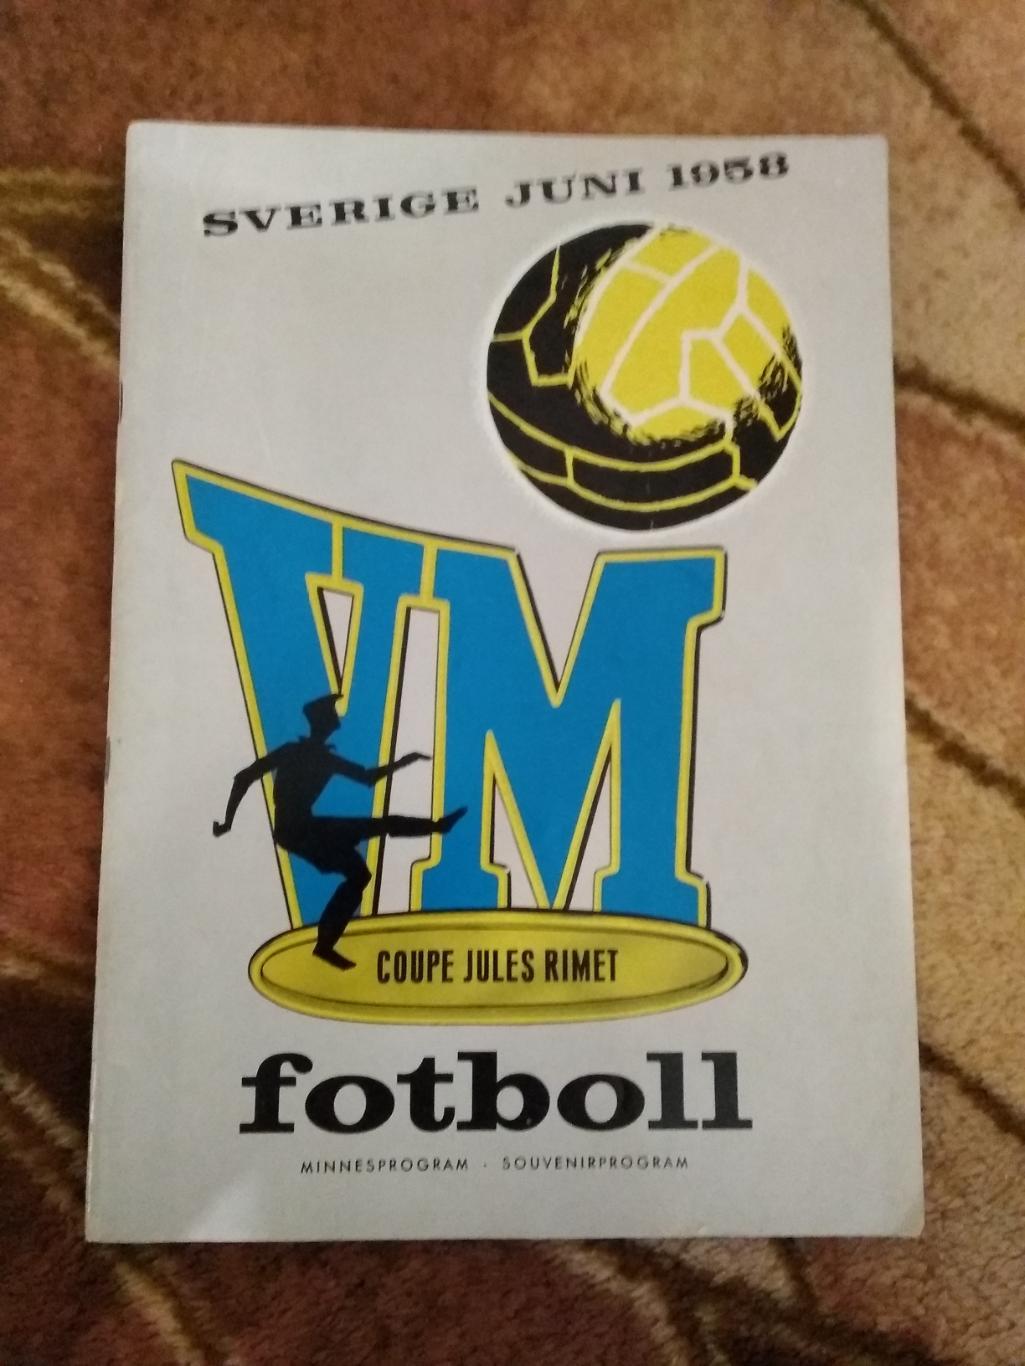 Чемпионат мира по футболу 1958.Швеция.(общая, официальная) (СССР).